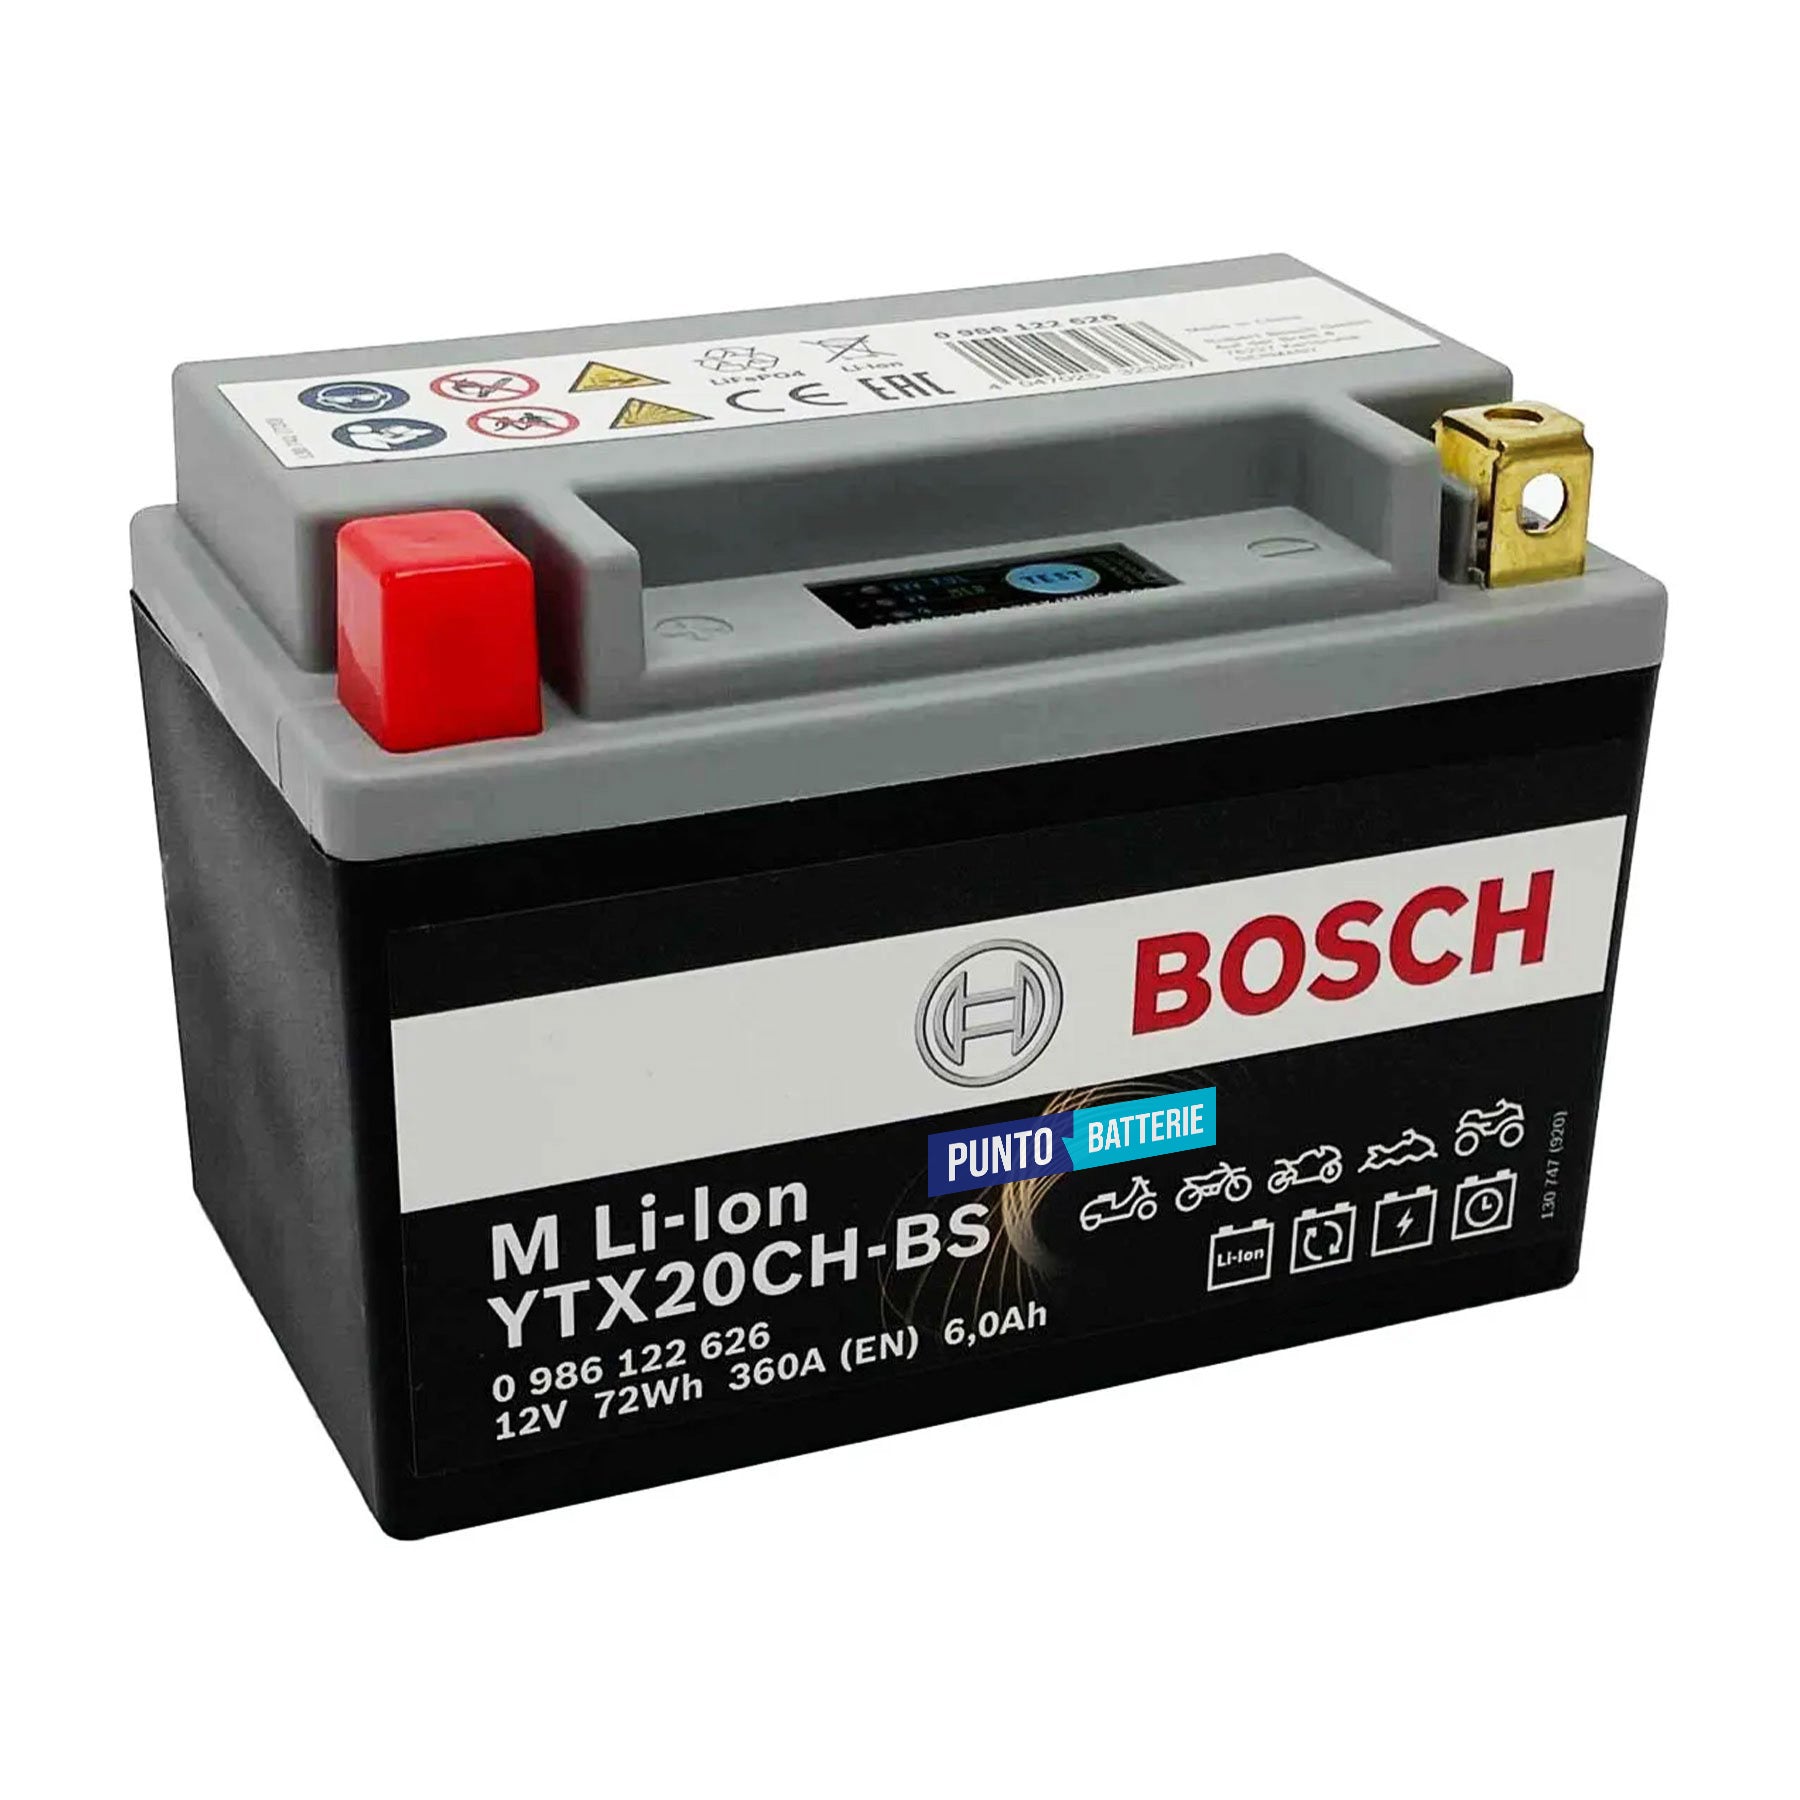 Batteria originale Bosch M Li-ion LTX20CH-BS, dimensioni 150 x 87 x 164, polo positivo a sinistra, 12 volt, 6 amperora, 360 ampere. Batteria per moto, scooter e powersport.